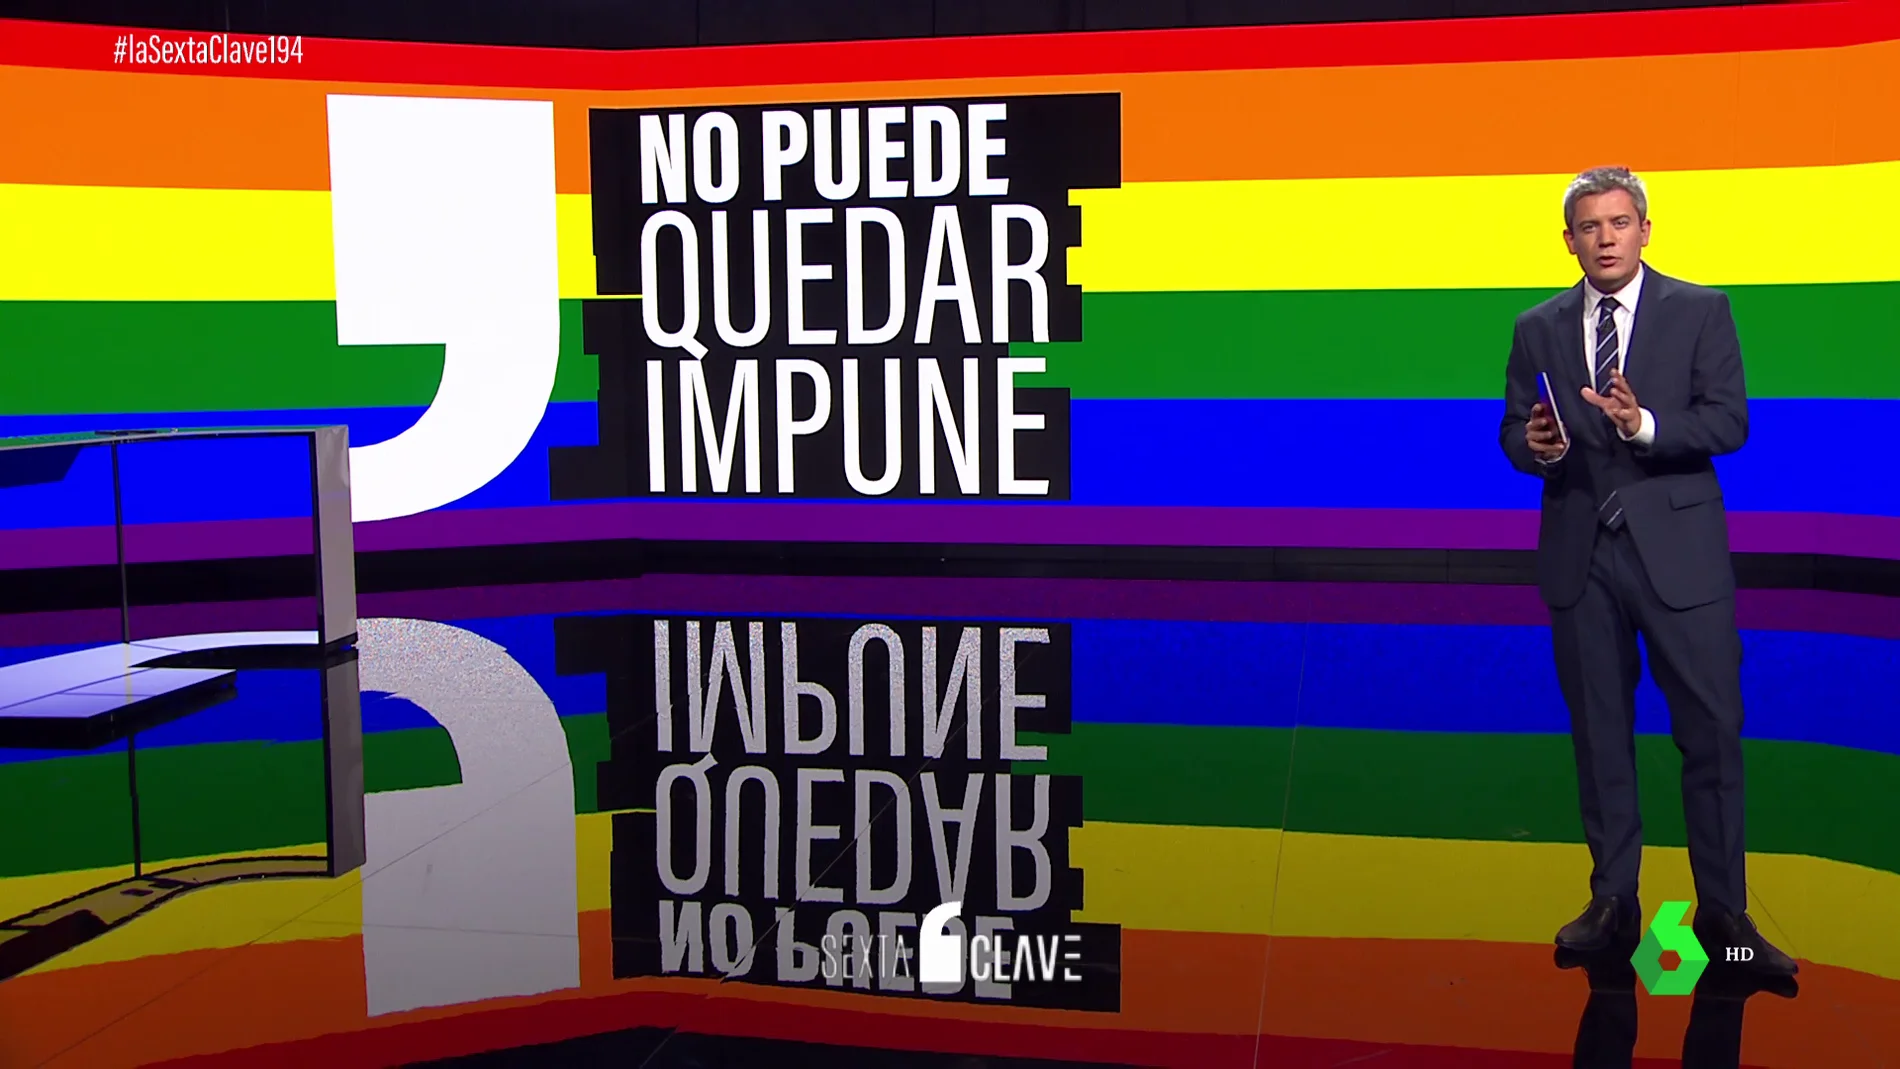 "No puede quedar impune": el mensaje de Rodrigo Blázquez tras la brutal agresión homófoba en Madrid